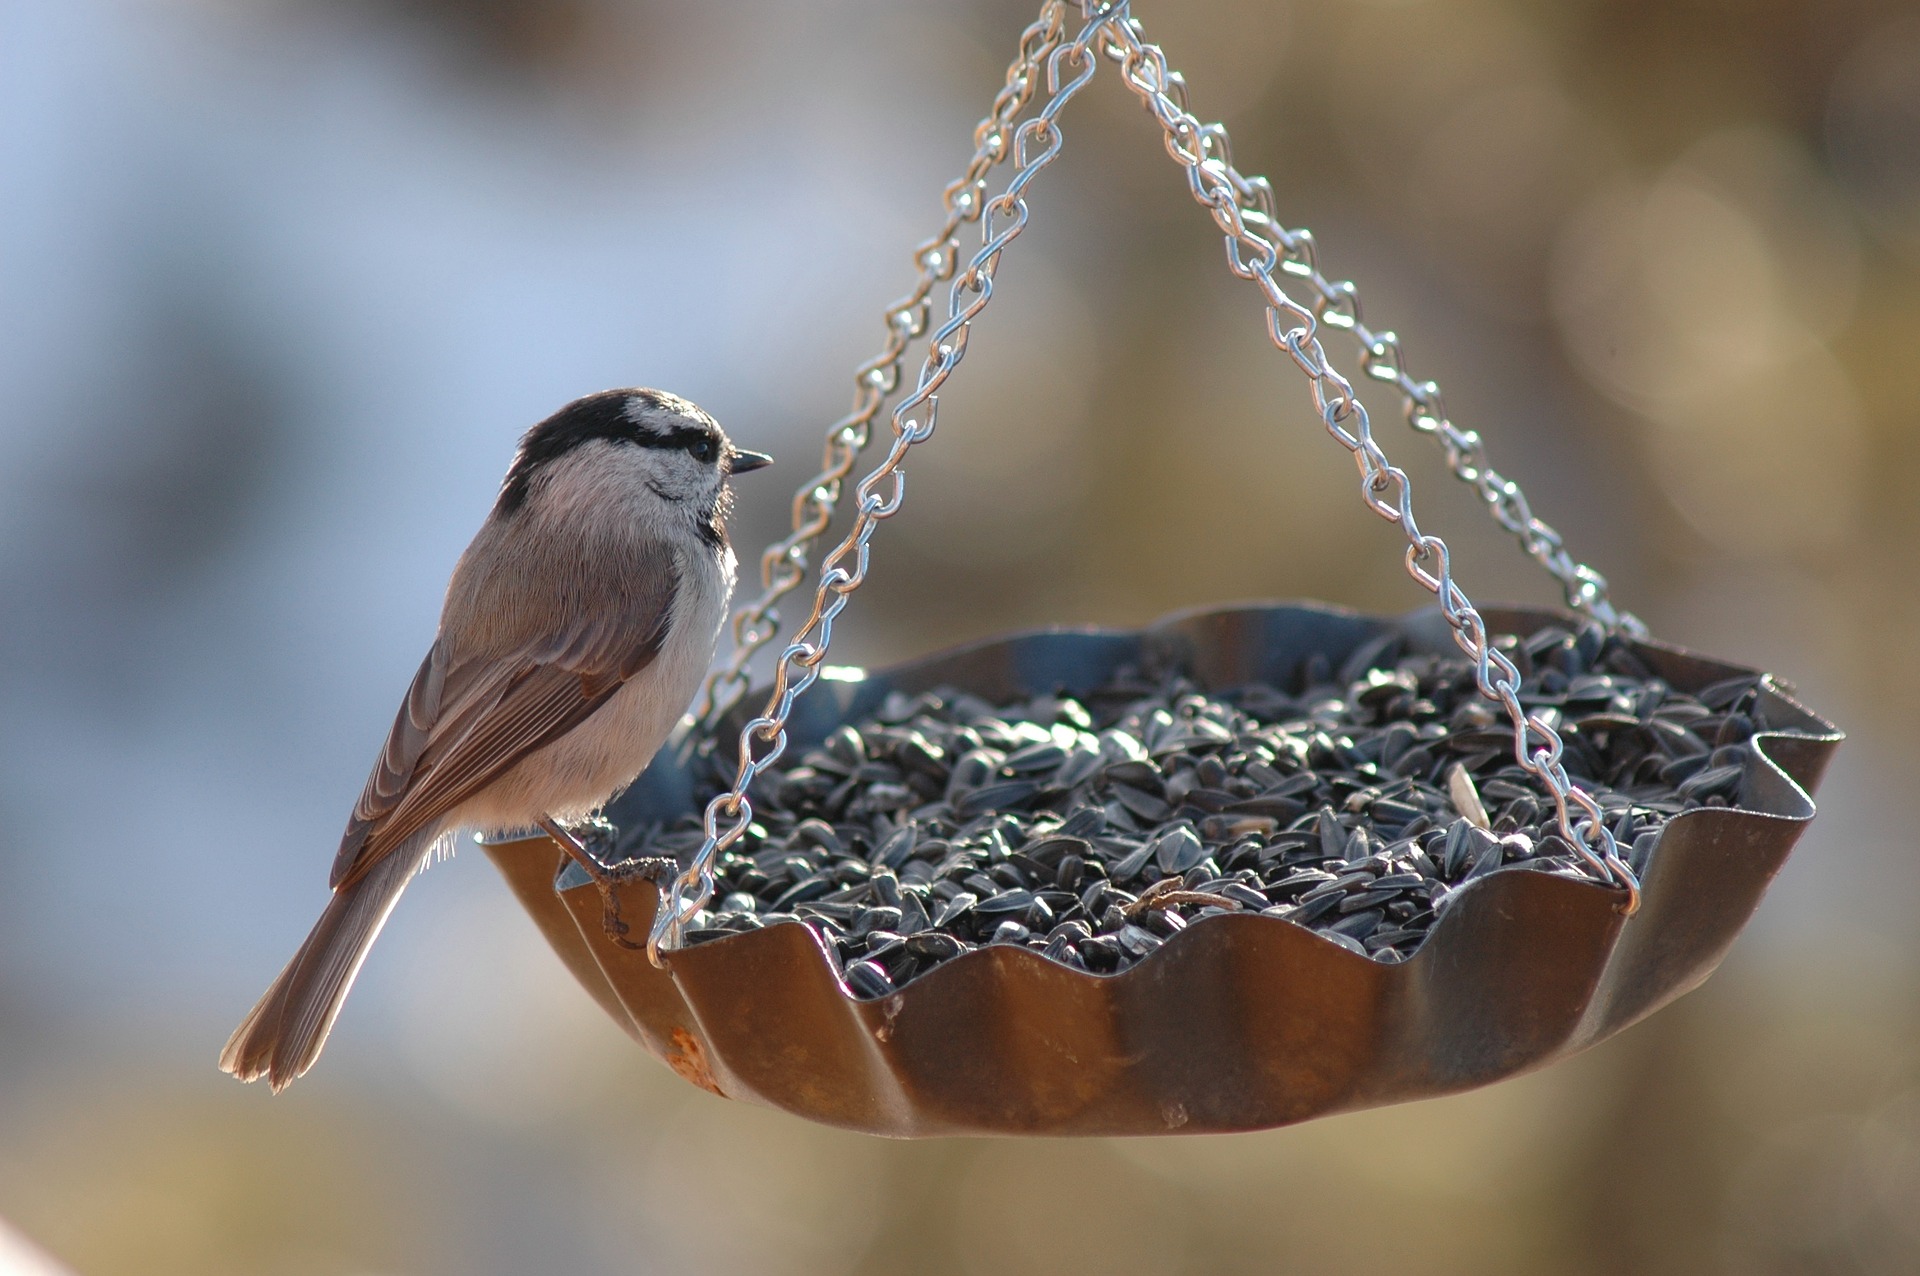 Finch on a bird feeder